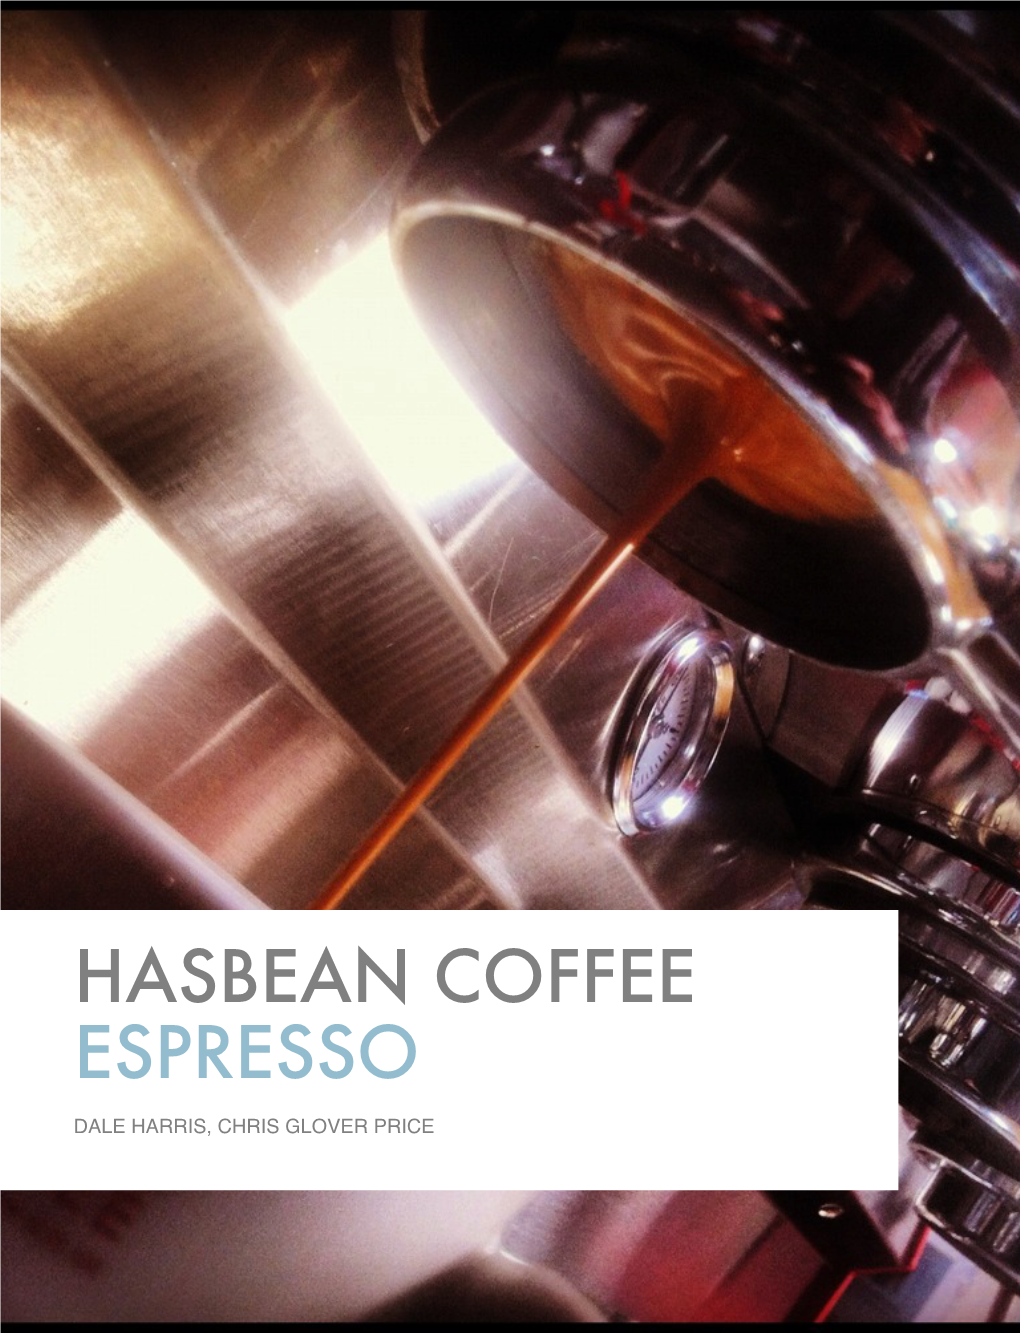 Espresso Training